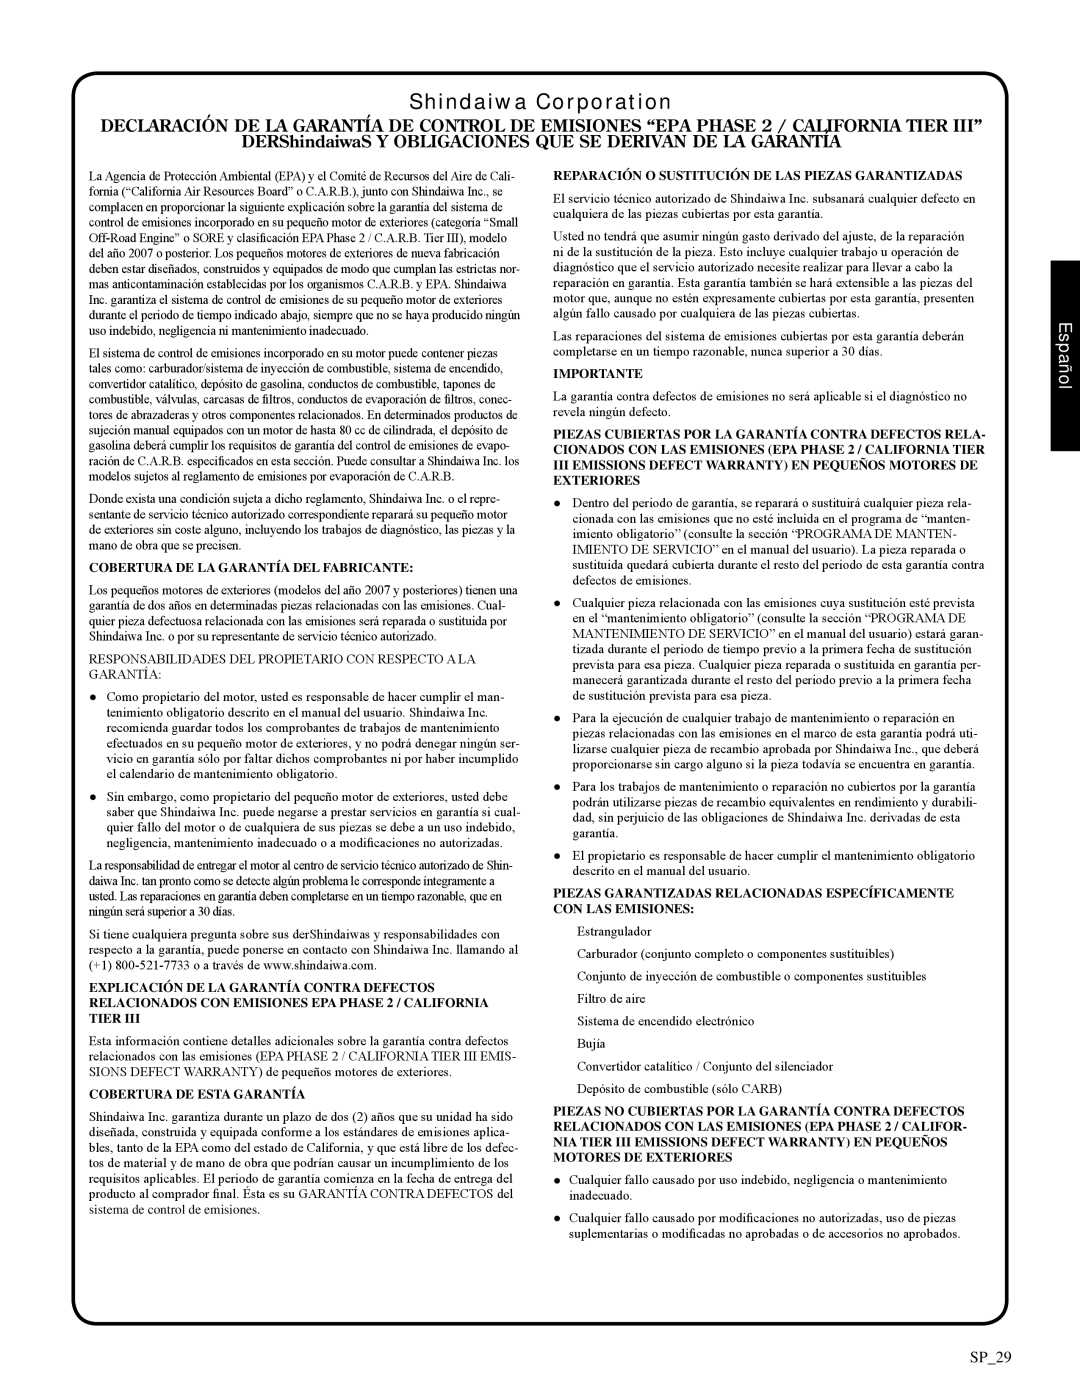 Shindaiwa 326T, 82085 manual Declaratión de la Garantía, Shindaiwa Corporation, Español 